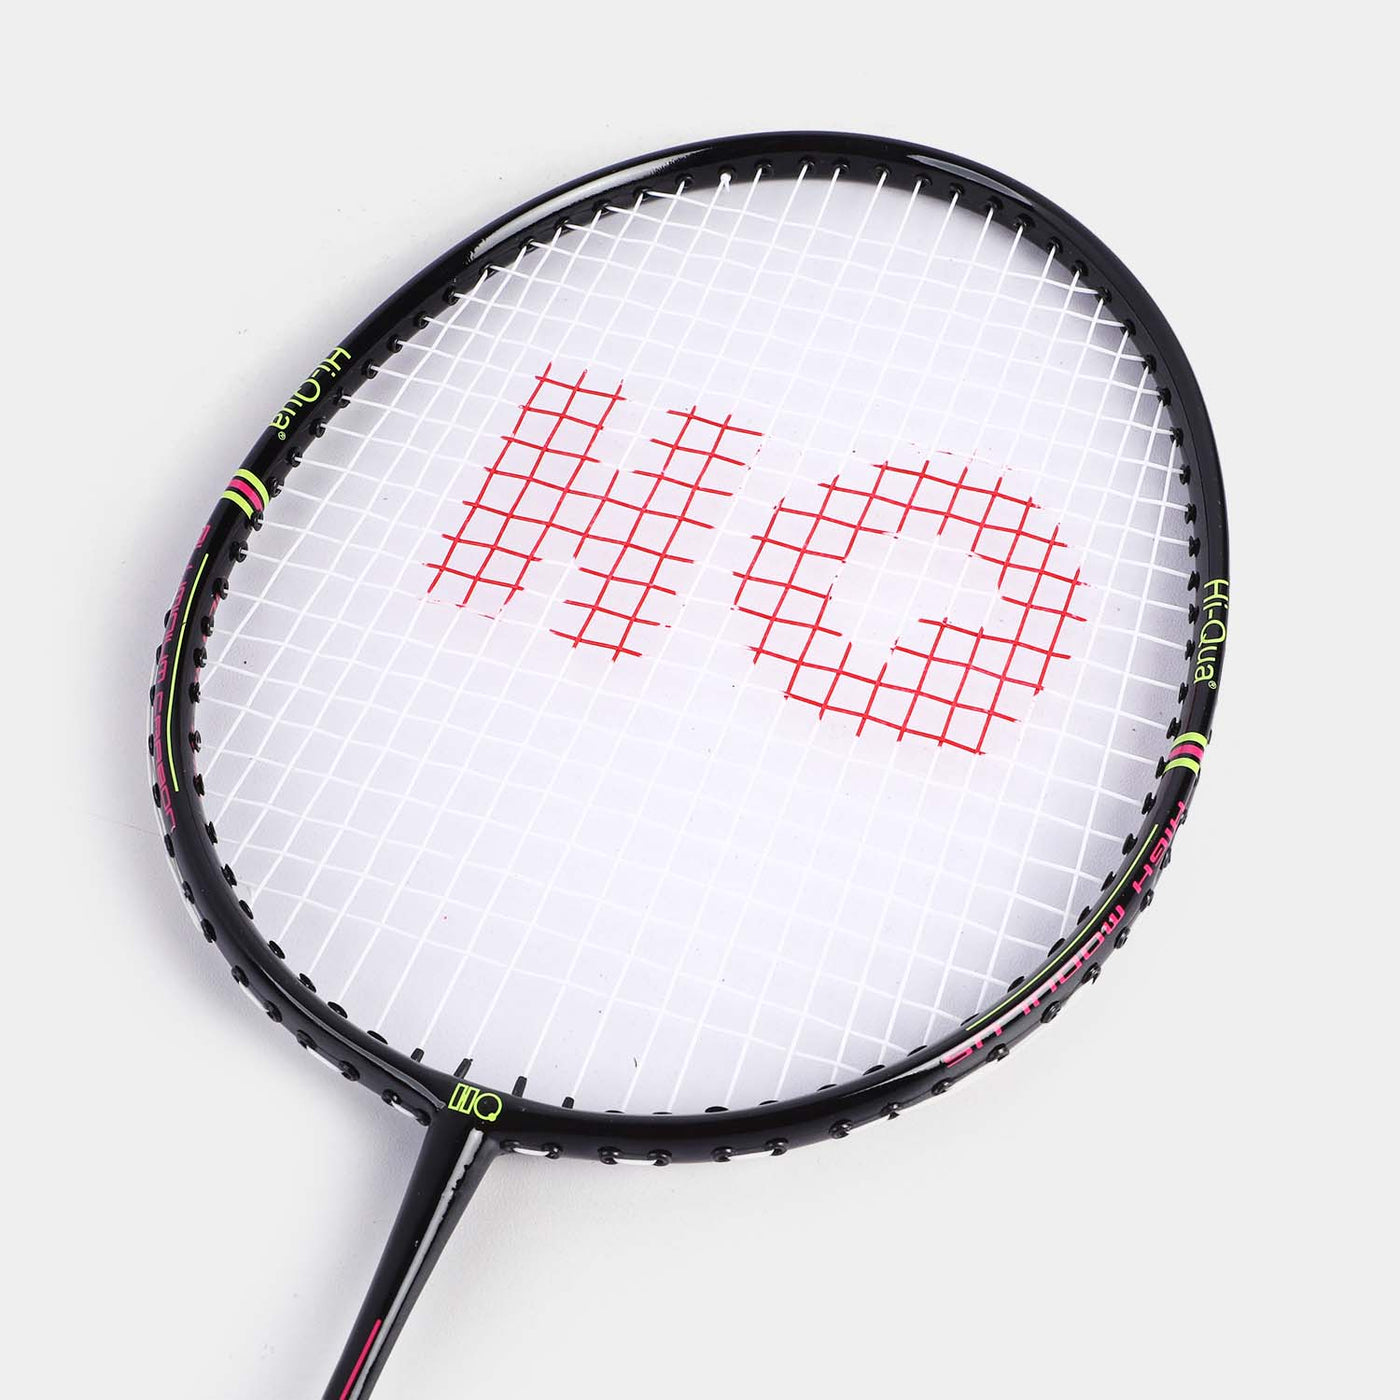 Hi-Qua Badminton Racket For Kids